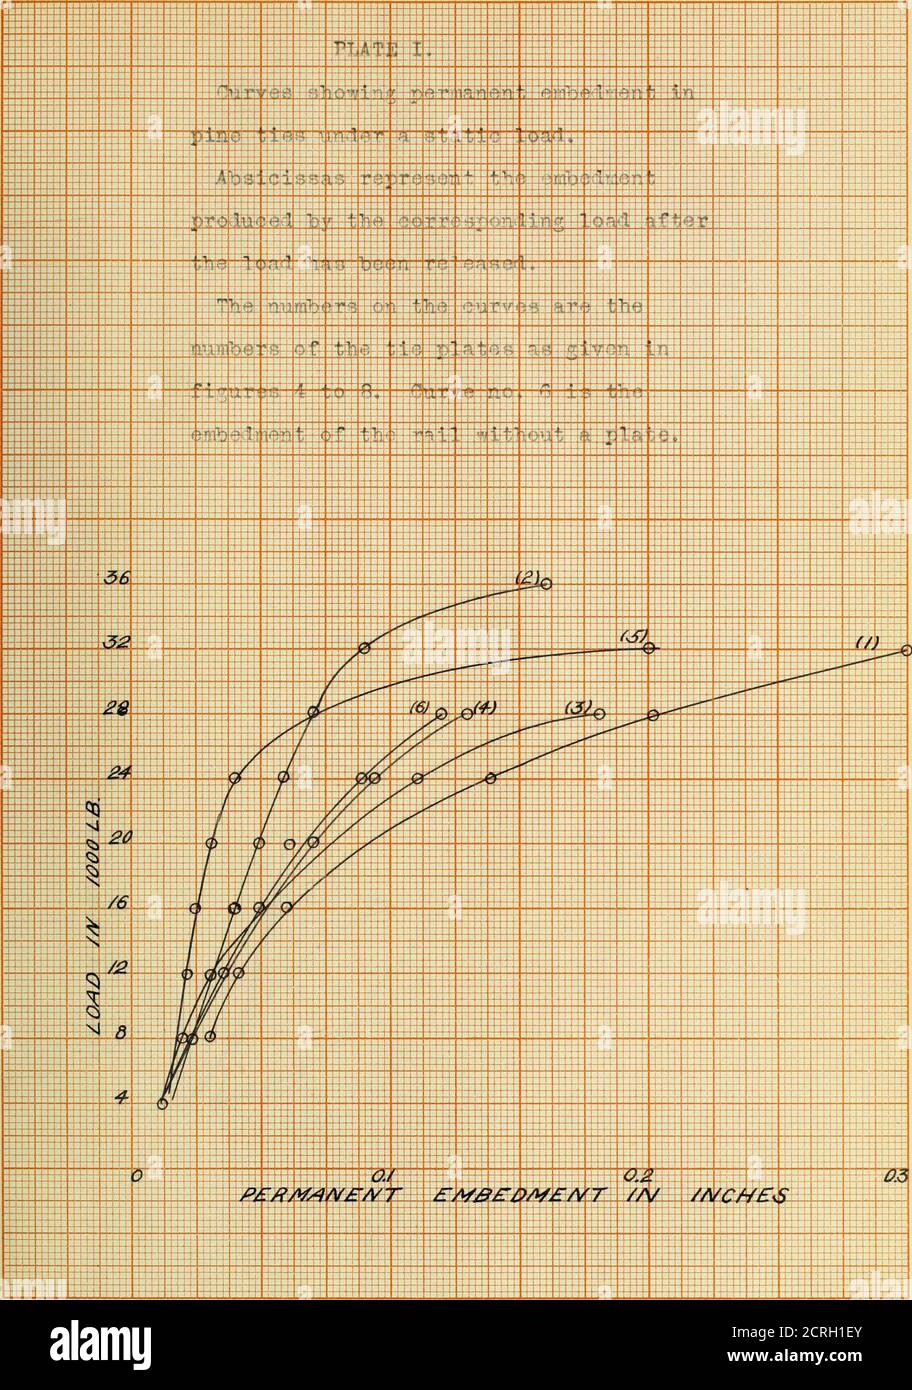 . Comparative tests of railway tie plates . Figure 5.TIE PLATE TTO. ?5.Weight 4.G lb.8cale i- 1. 30 V y: FigureTIE PLATS NO. 3.Weigut 6.8 lb.Scale I- 1. / / / &lt;   / ^ /, /   s  s  / // / / /  s / / / V Figure 7.TTK PUTJC NO. 4.^eig^it 2,4 lb.Scale J- 1, CO Ki 5 ^ Figure 8,HIK VlJ^TTi NO. 5.Weight n.S5 lb.Scale J- 1. /I loo o. 4 -4 -j— 1 -- &lt;»■ - • &lt;^&lt; i  --    L 1 1 --^ -1— 1 h M +T 1 1! X i - -r -X - XX —fi— L — ■j- - T --4- 1 0+ ■ X i + x:;::: r -T^ 1 i - --r —4 -- -.-.-.-A y^—- 1 f—T V -j— 4- — - — 1 - —t ::::4 v -| ft -- rr -- -f X n --+ it 1 -Ul -+ i -■ fW ^! 4+ rv Stock Photo